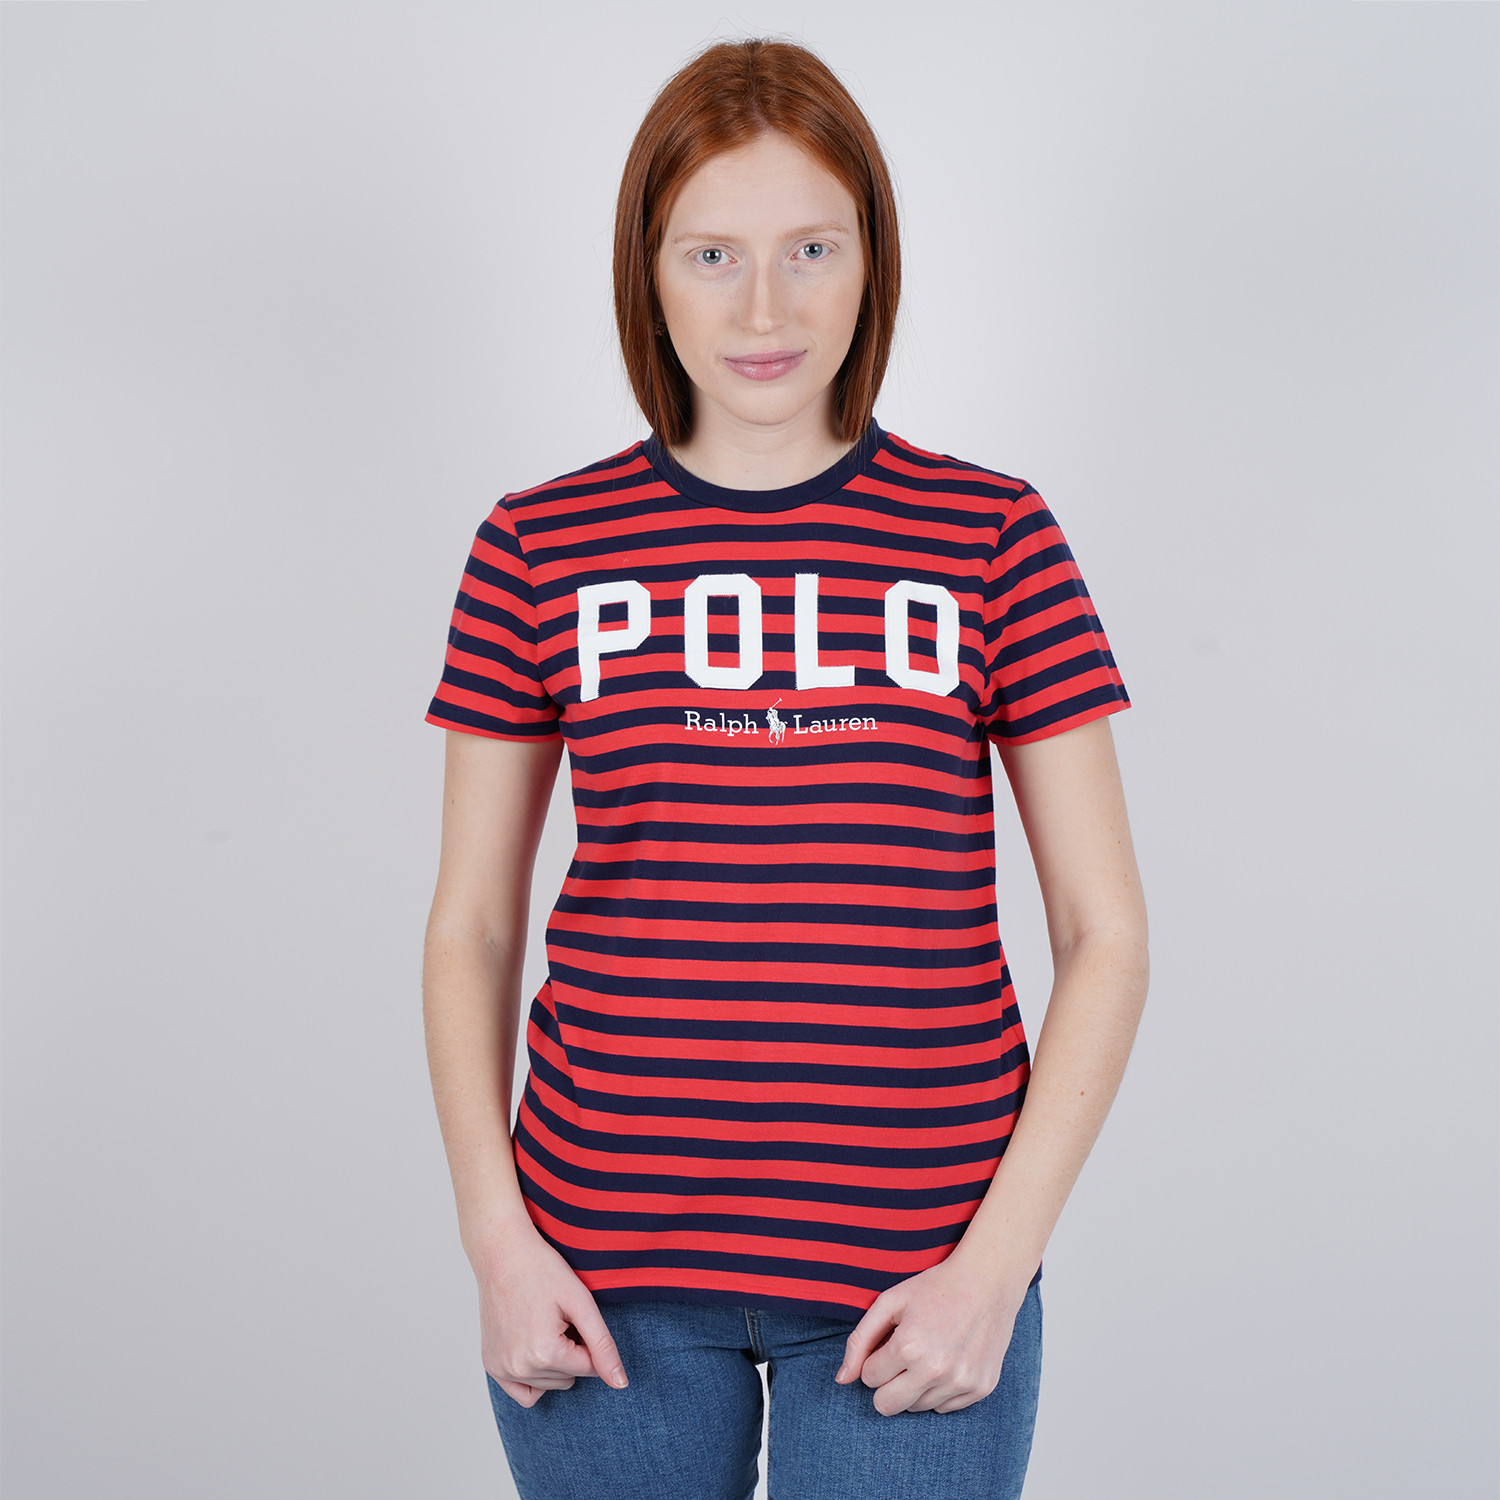 Polo Ralph Lauren Striped Women's T-Shirt (9000050514_44949)